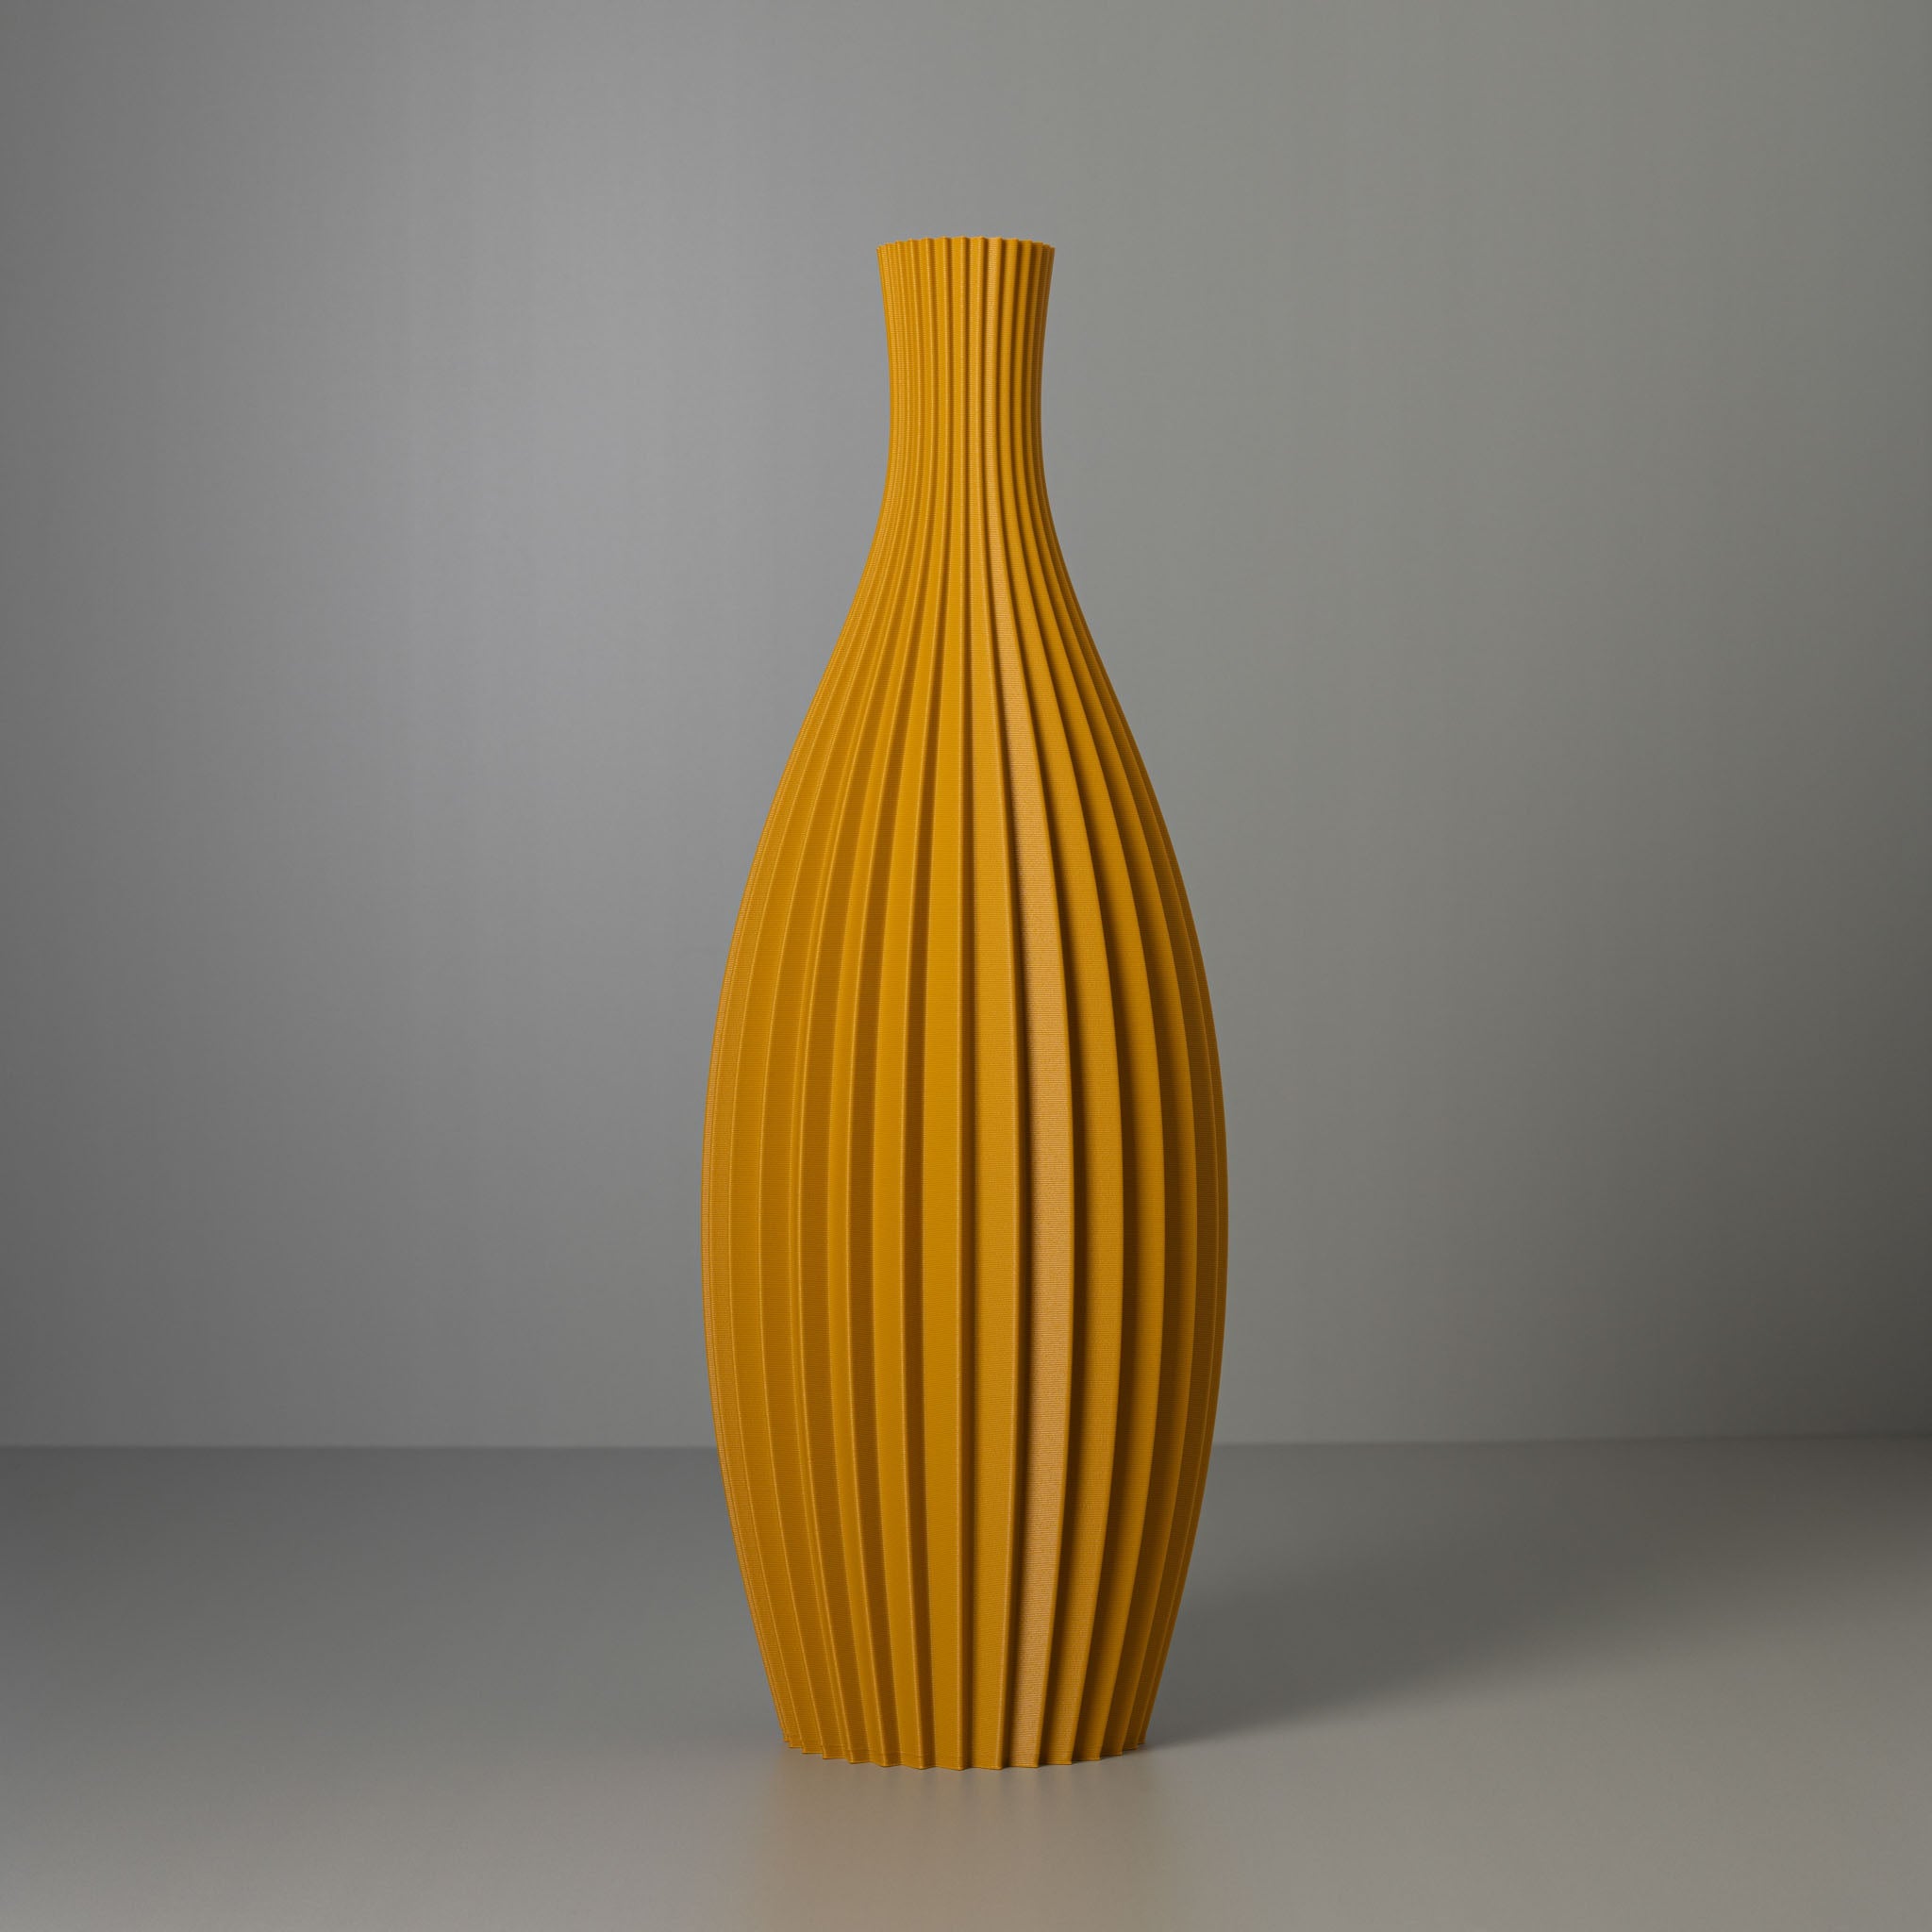 Tall Decorative Floor Vase, floor flower vase, Brown PVC Floor Vase Flower  Holder, 41-Inch-Tall Vase